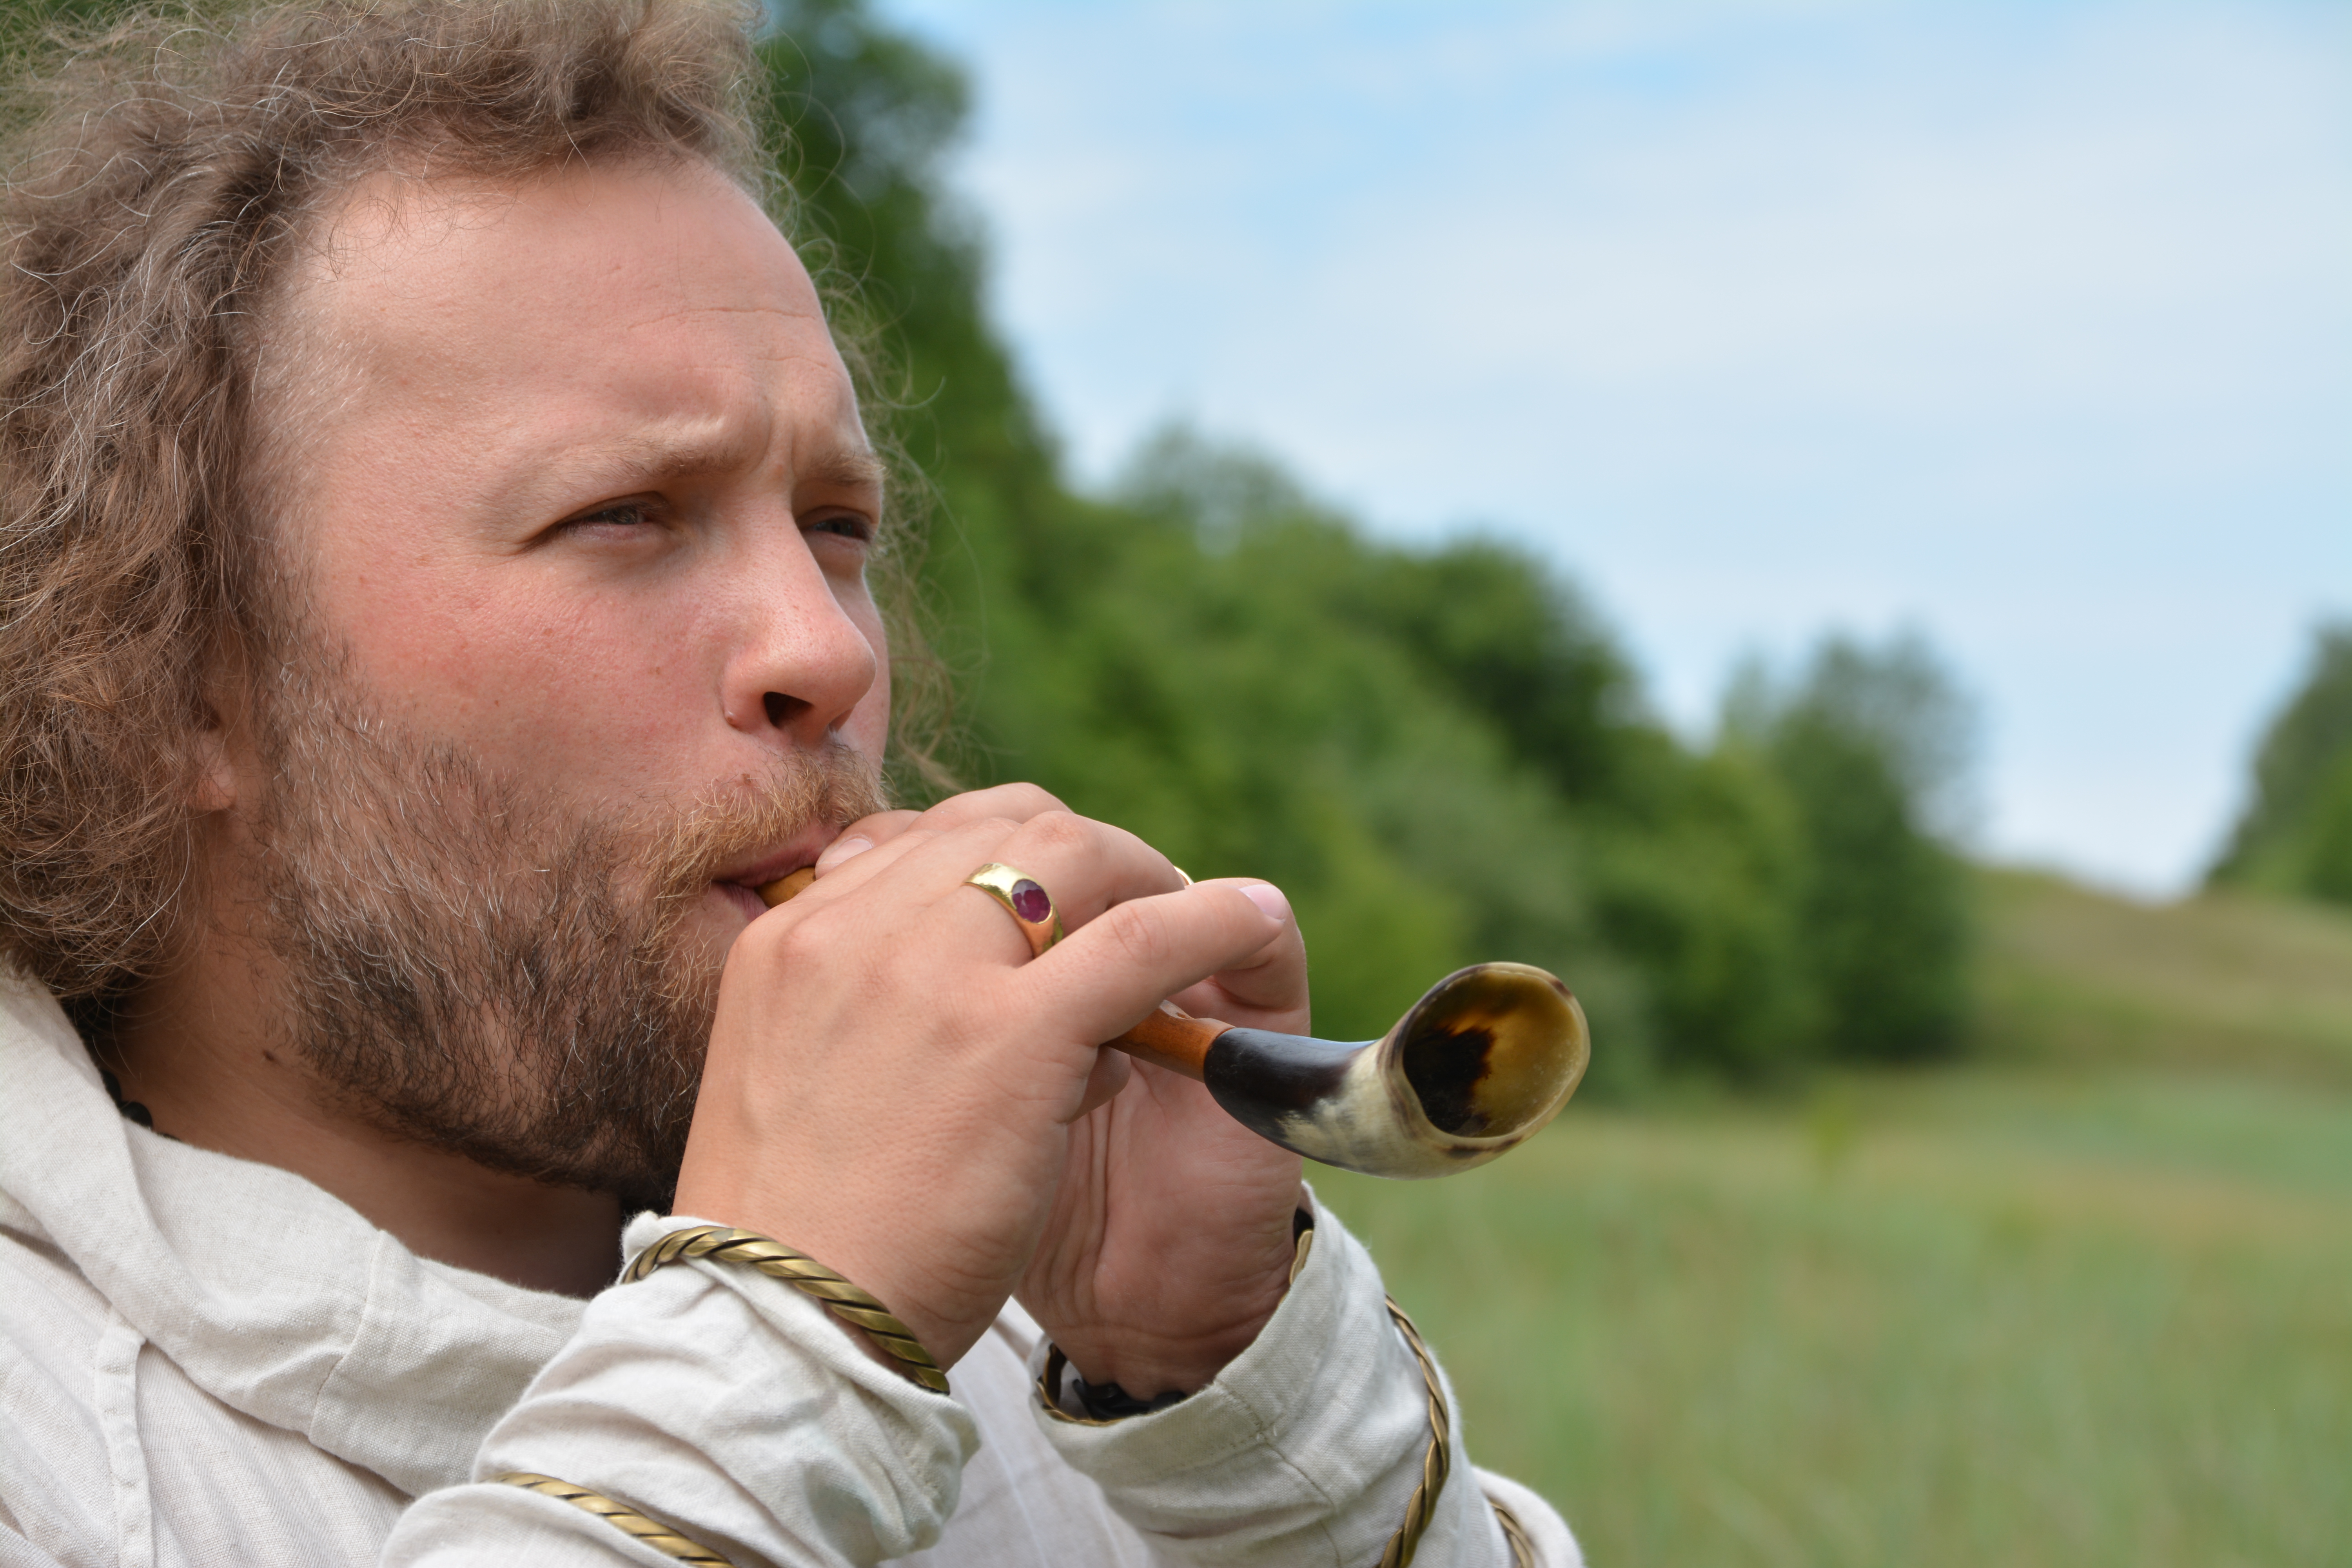 Saulius Petreikis plays the Lithuanian folk instrument Sekminių Ragelis